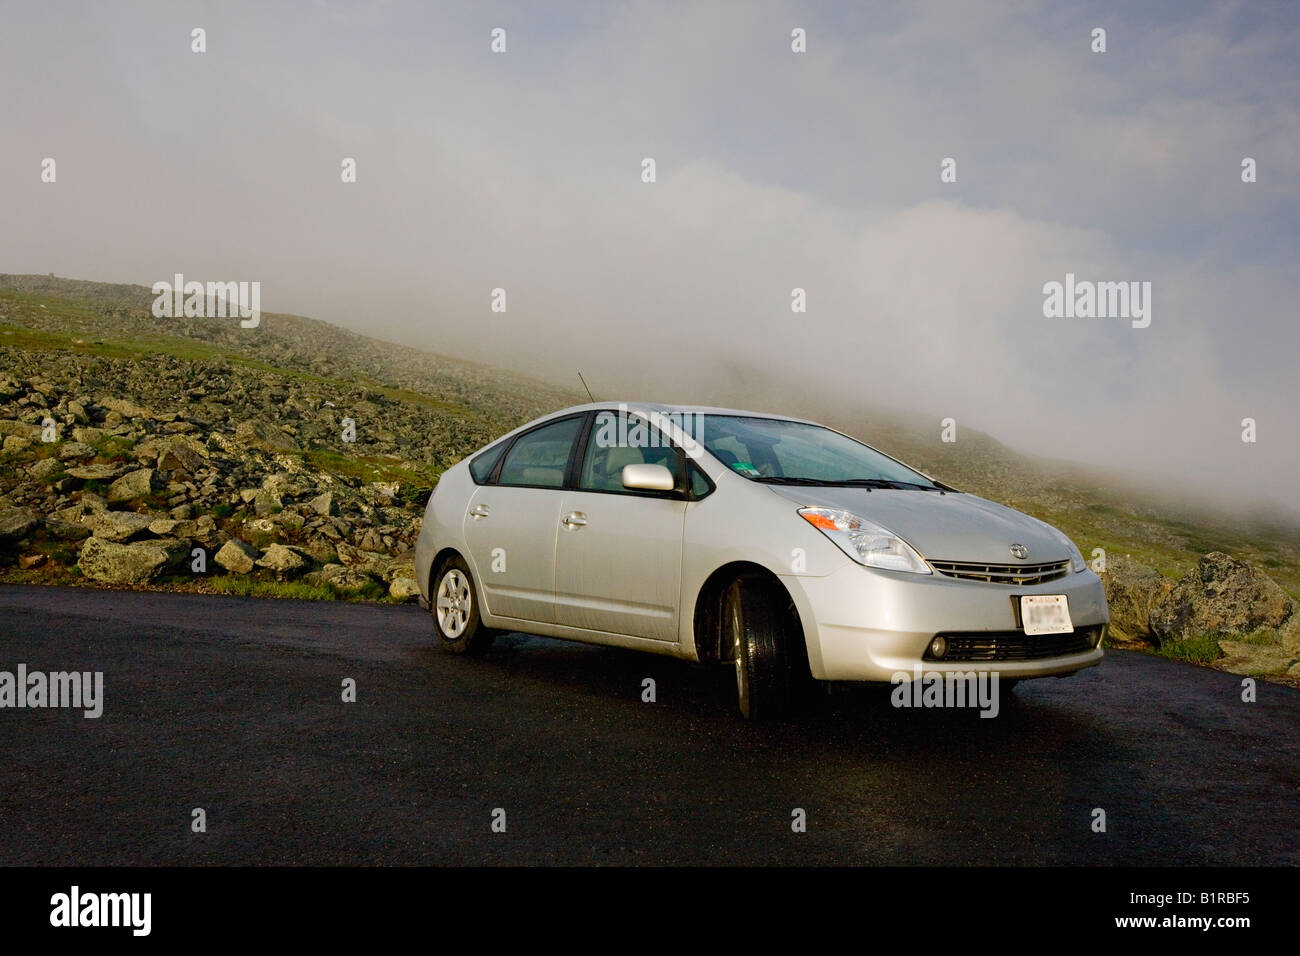 Toyota Prius in the mountains Stock Photo